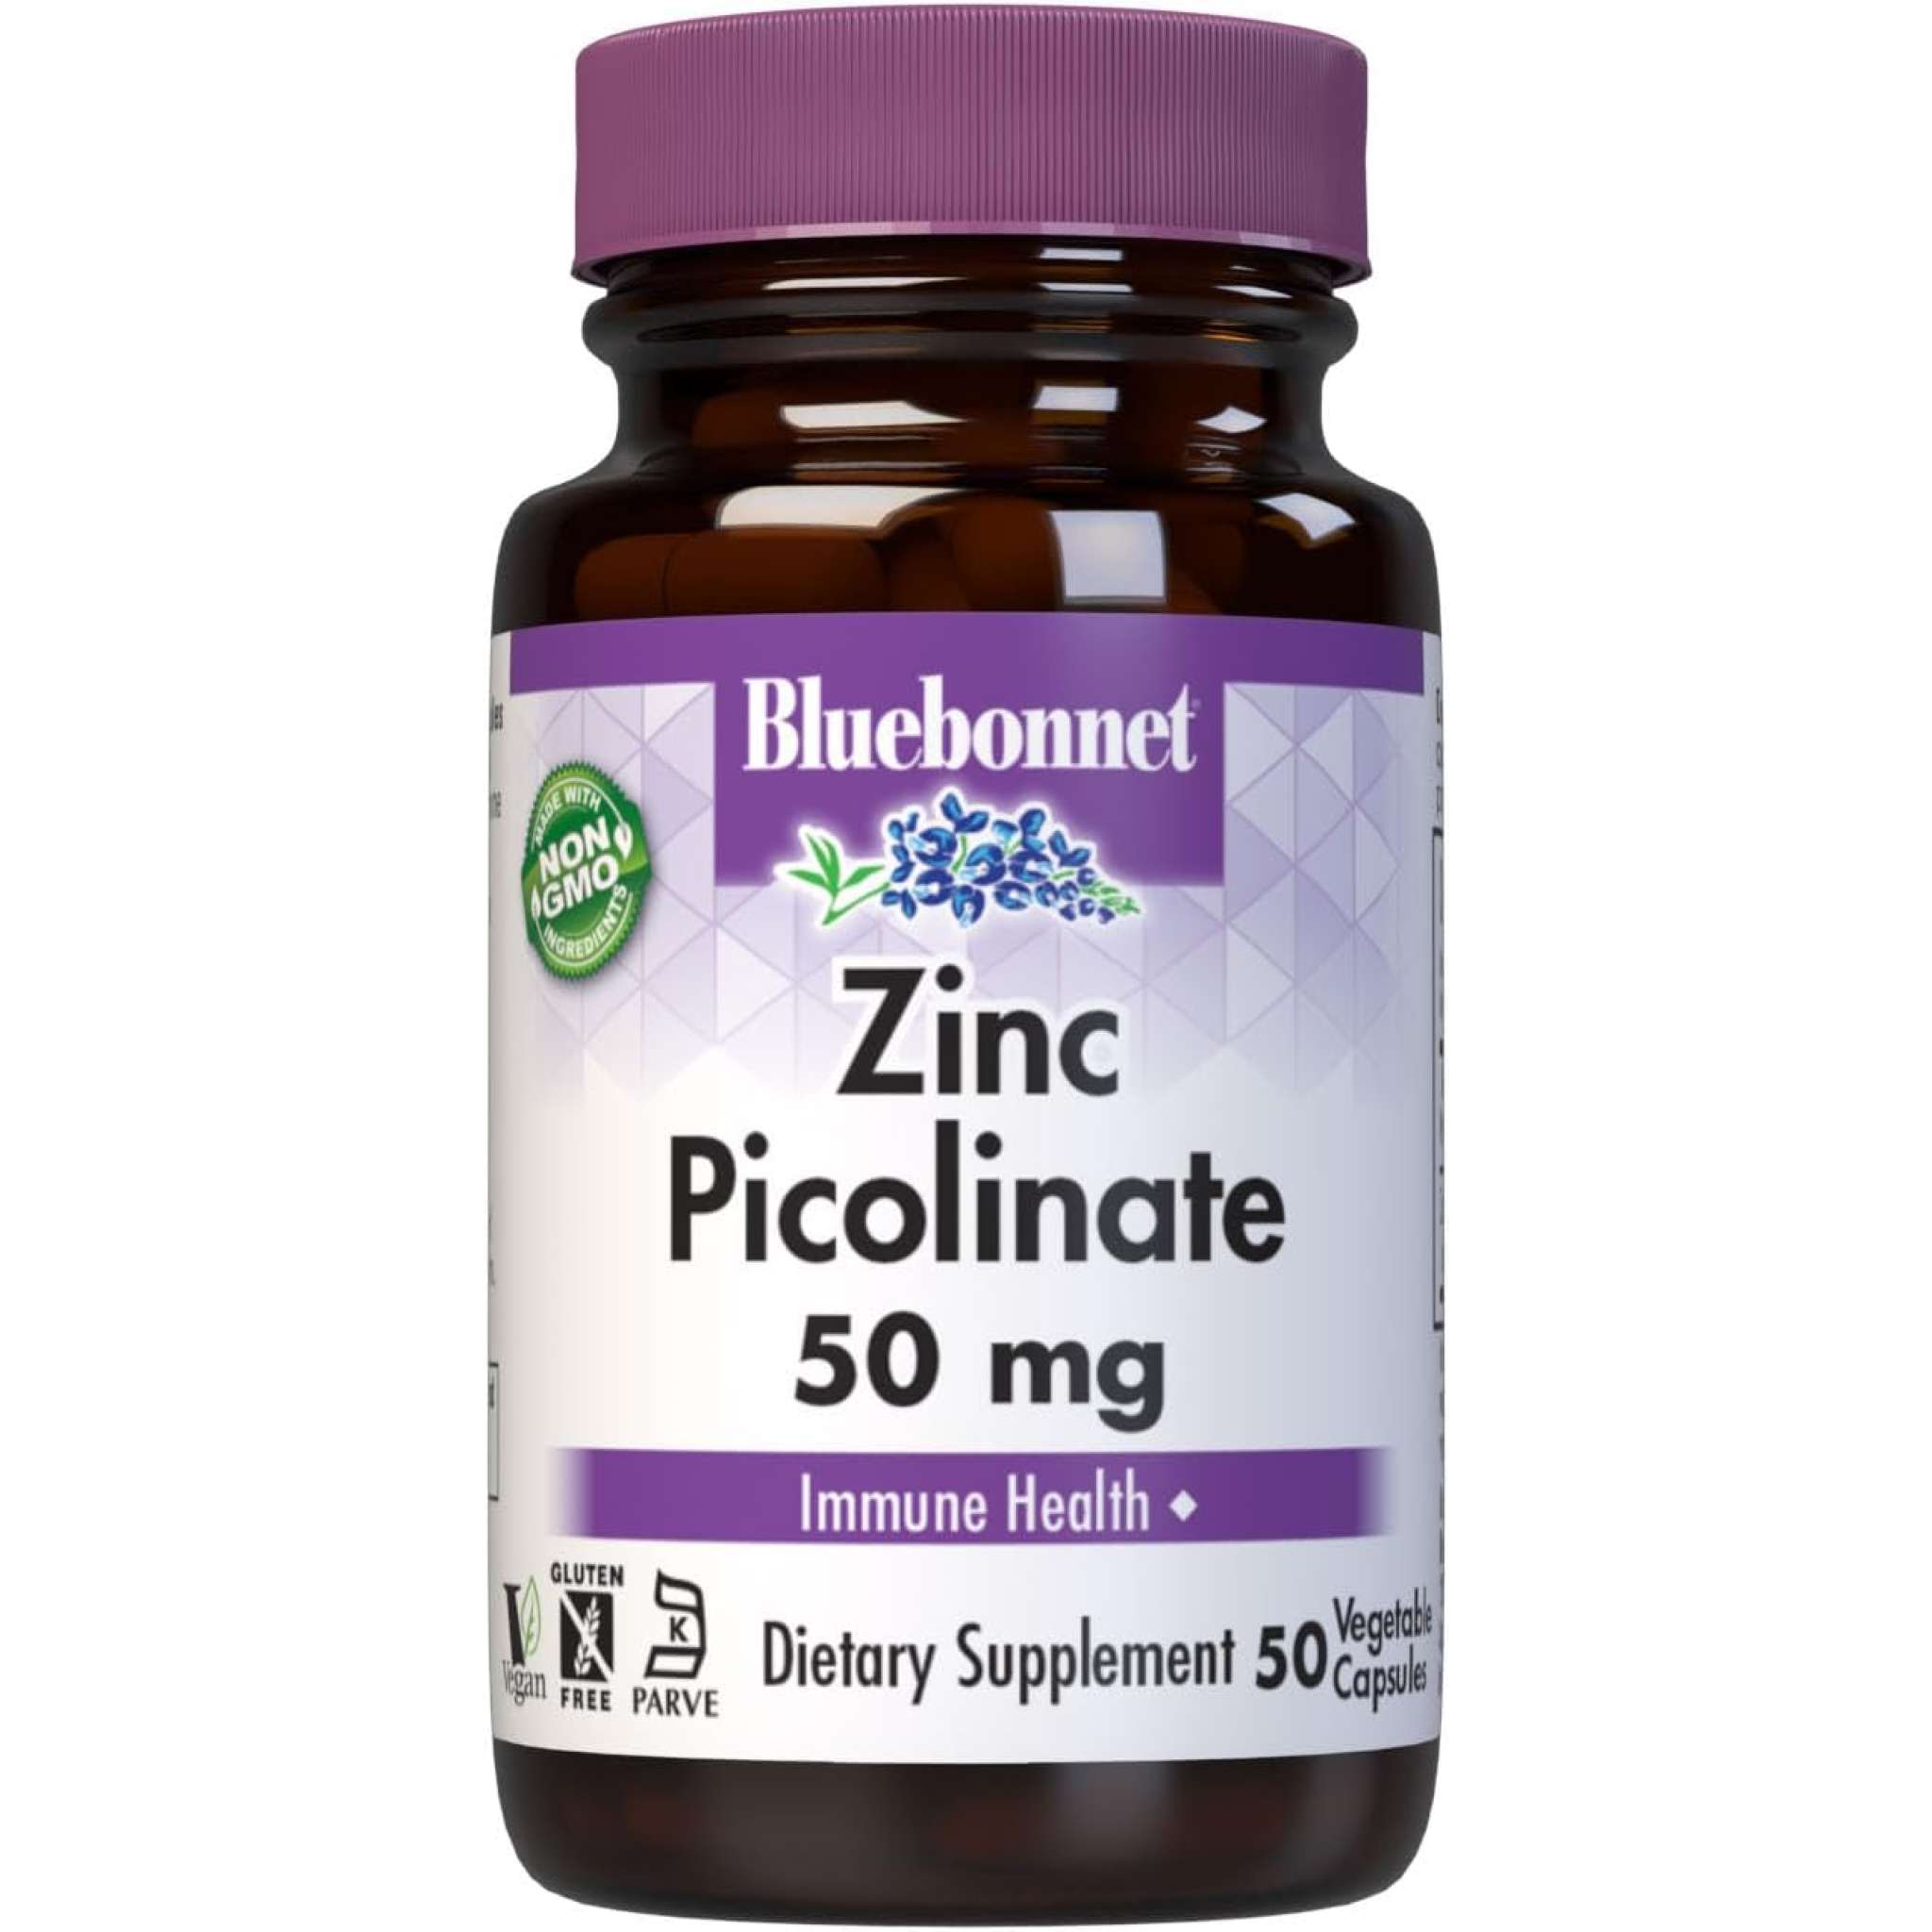 Bluebonnet - Zinc Picolinate 50 mg